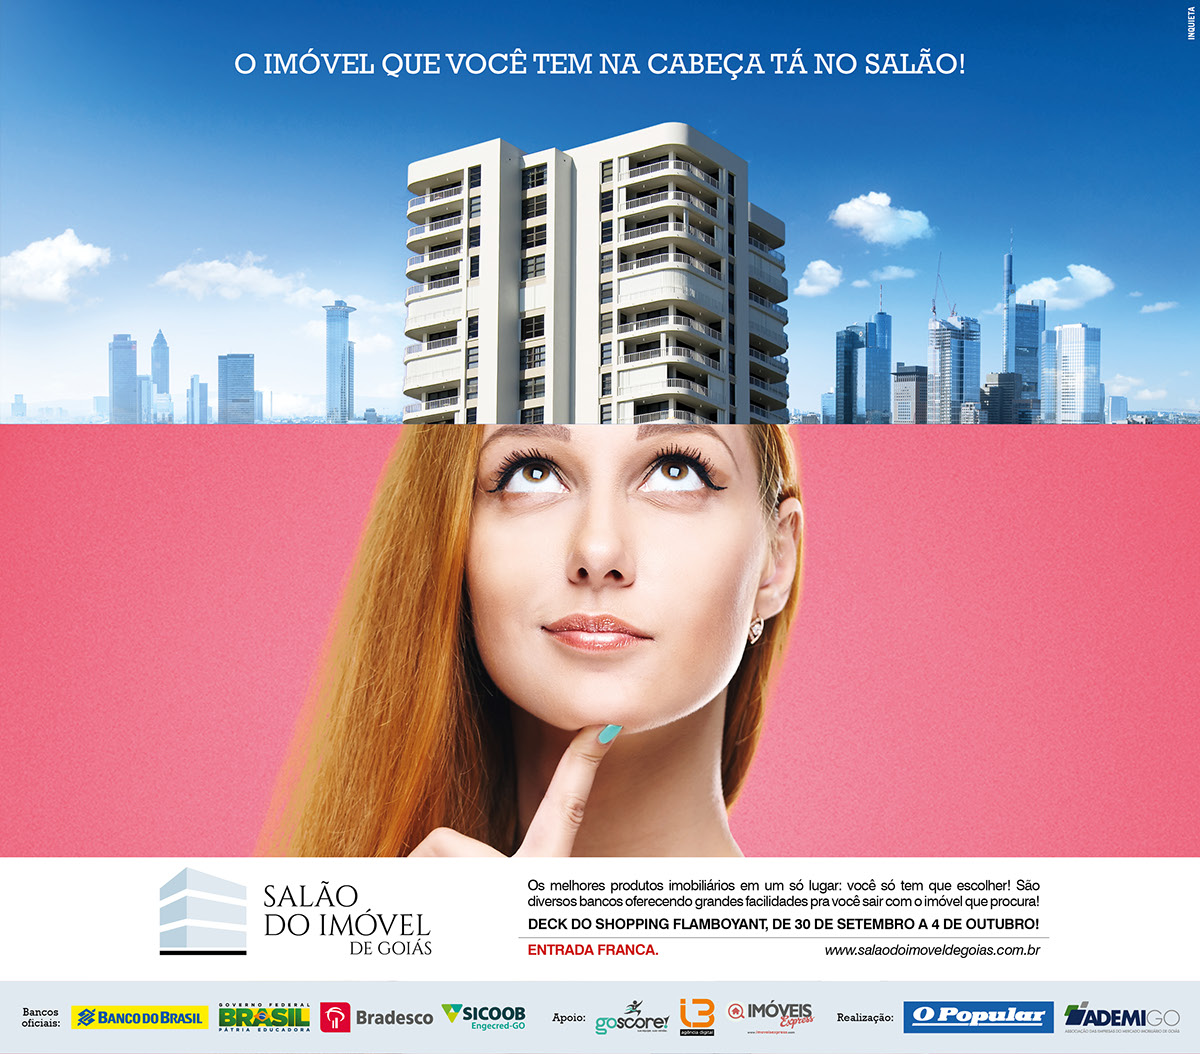 SALÃO DO IMÓVEL Goiás o popular anúncio folheto Outdoor campanha vendas